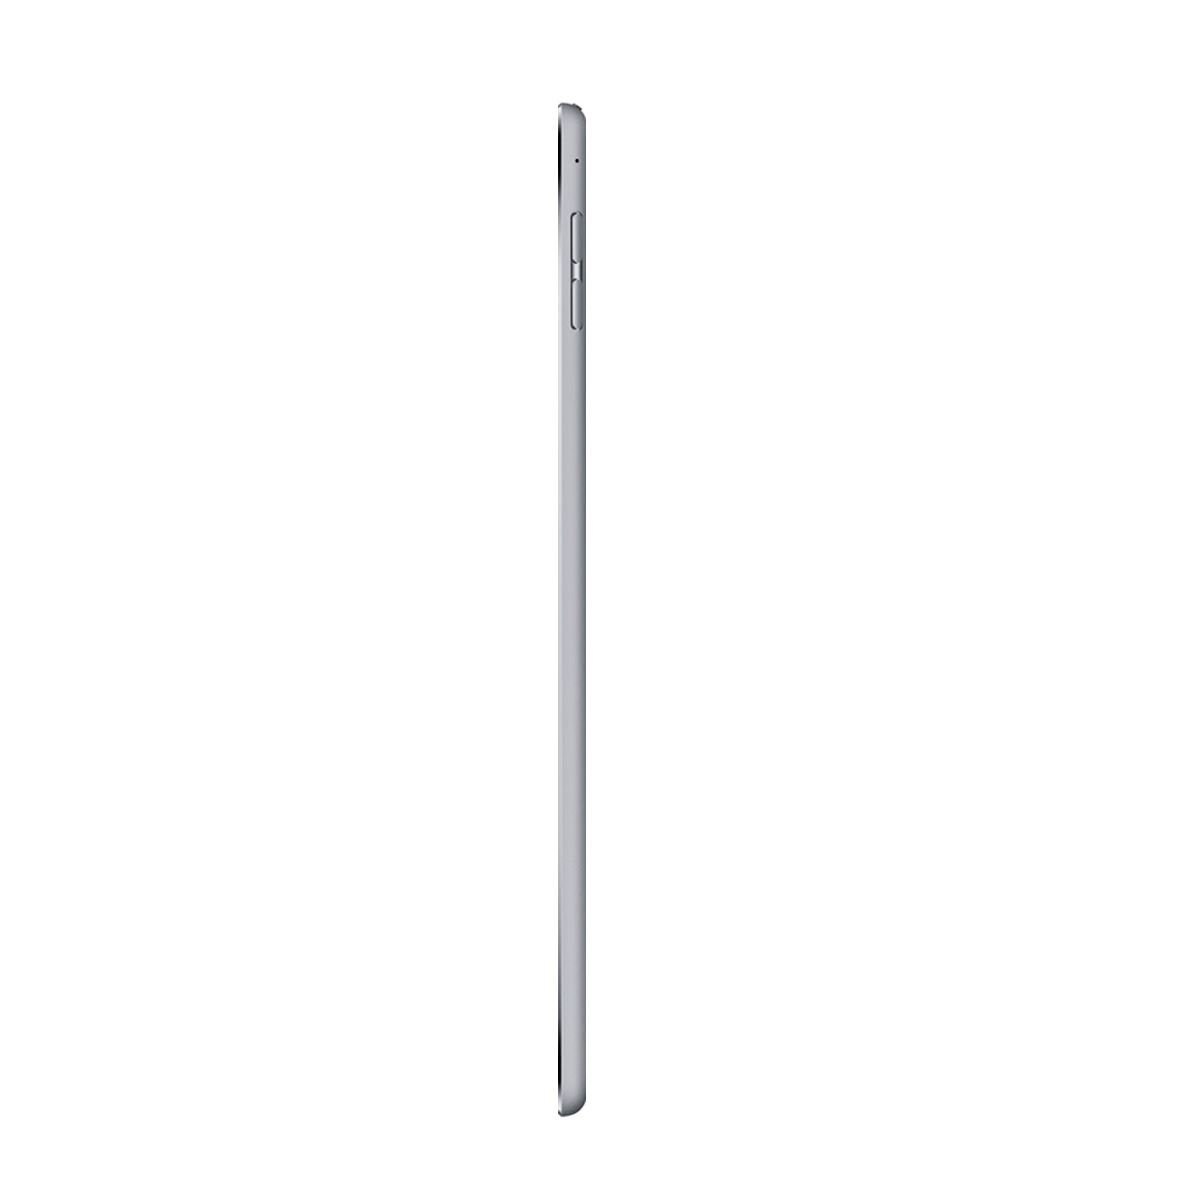 iPad Mini 4 Wi-Fi 16gb Space Gray